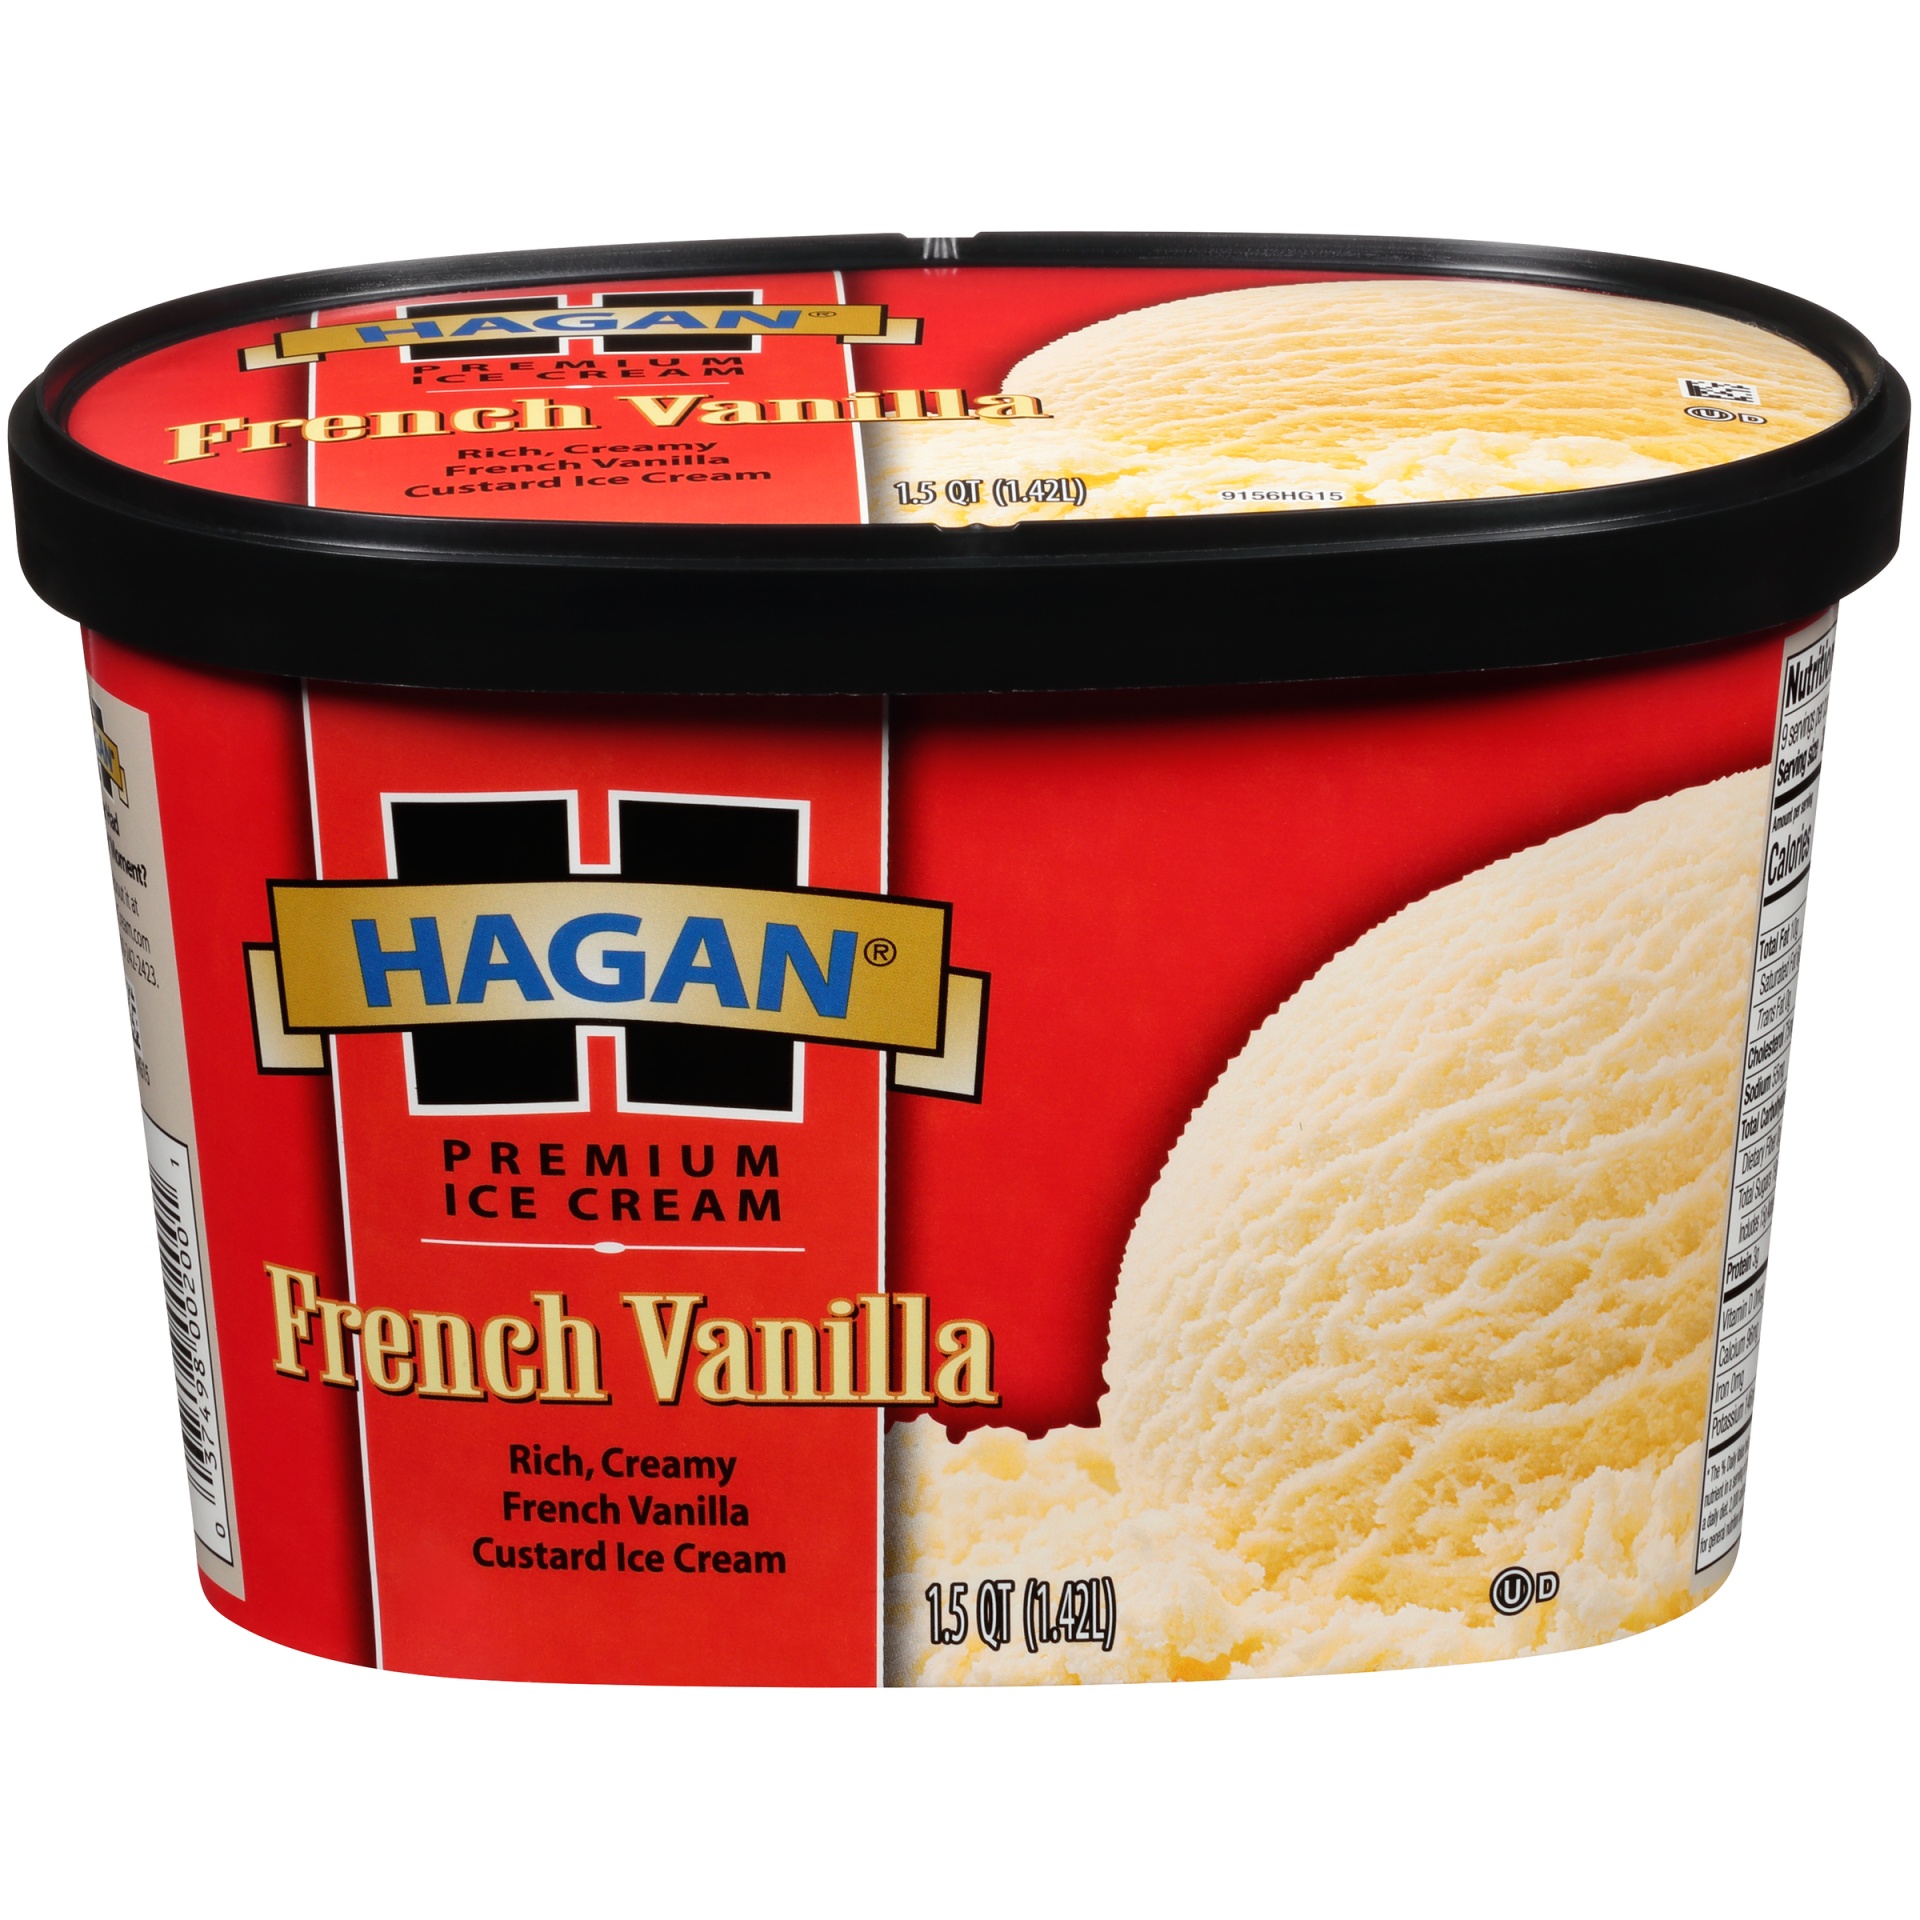 slide 1 of 7, Hagan French Vanilla Premium Ice Cream, 1.5 qt